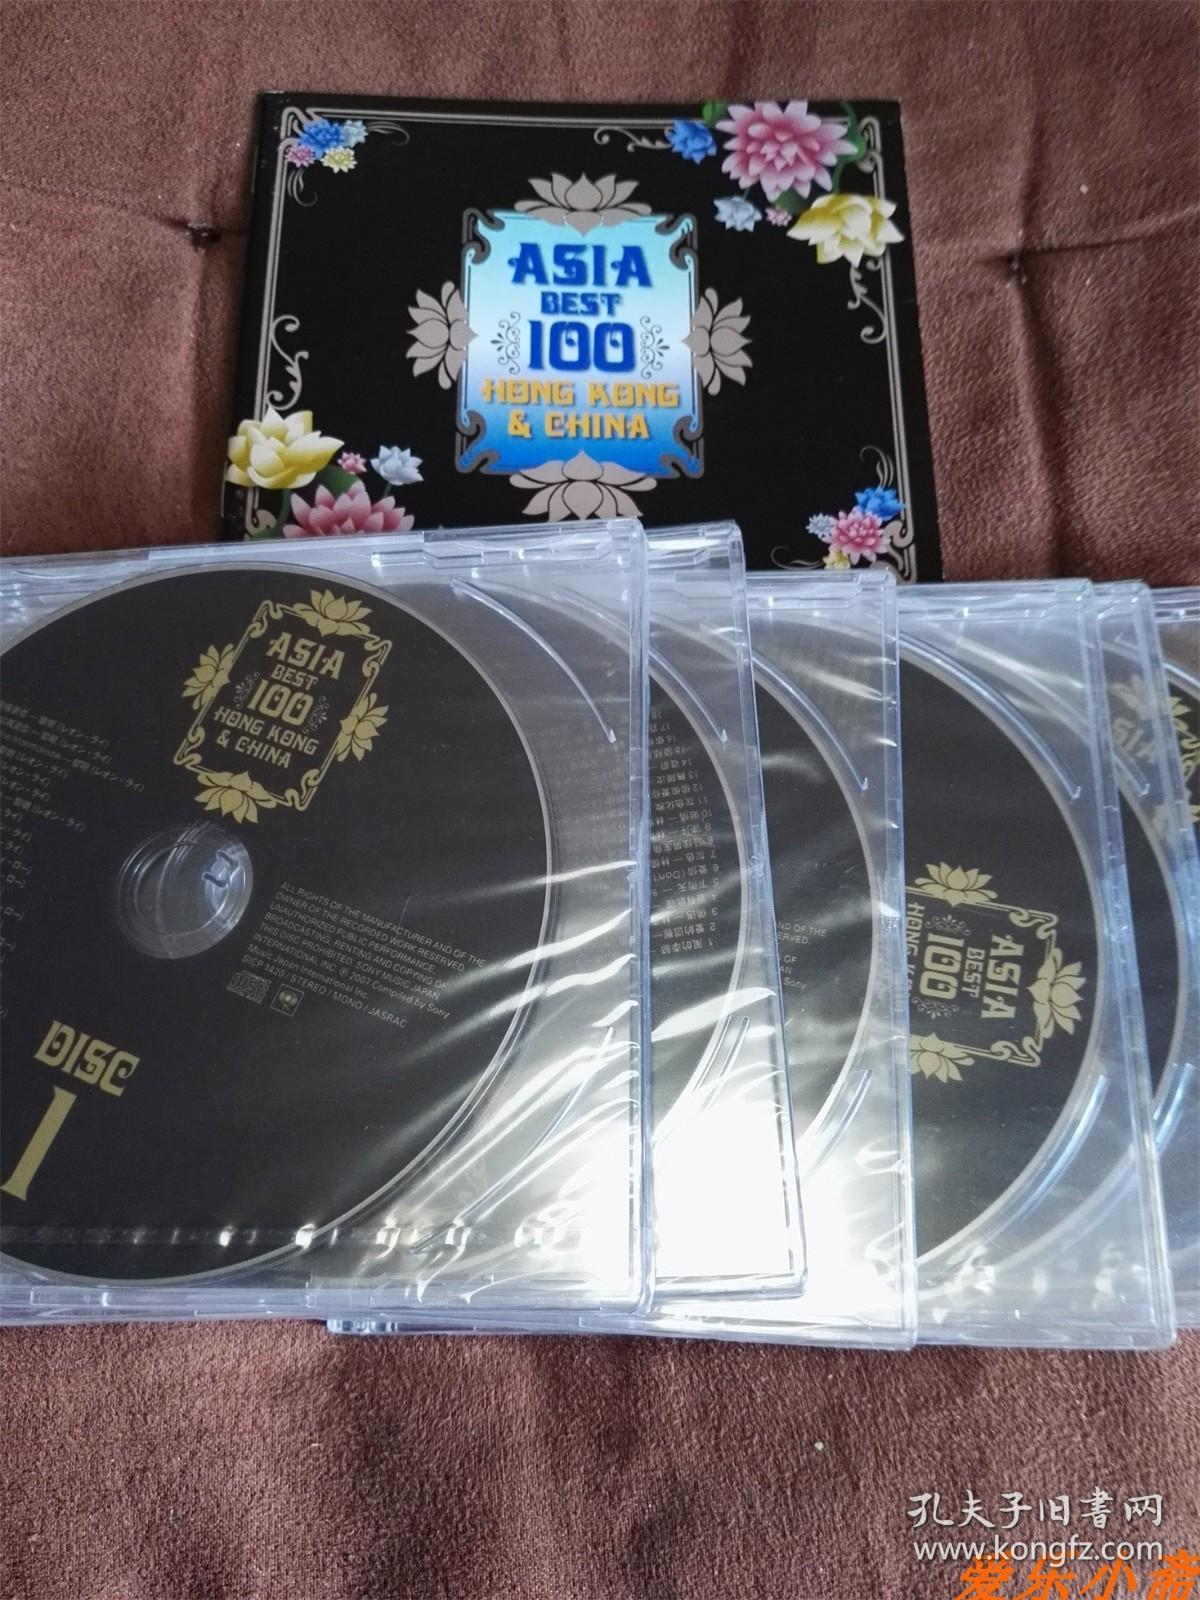 稀绝珍藏 SONY 香港&大陆精选100首/Asia Best 100 Hong Kong&China 6CD 日本土首版